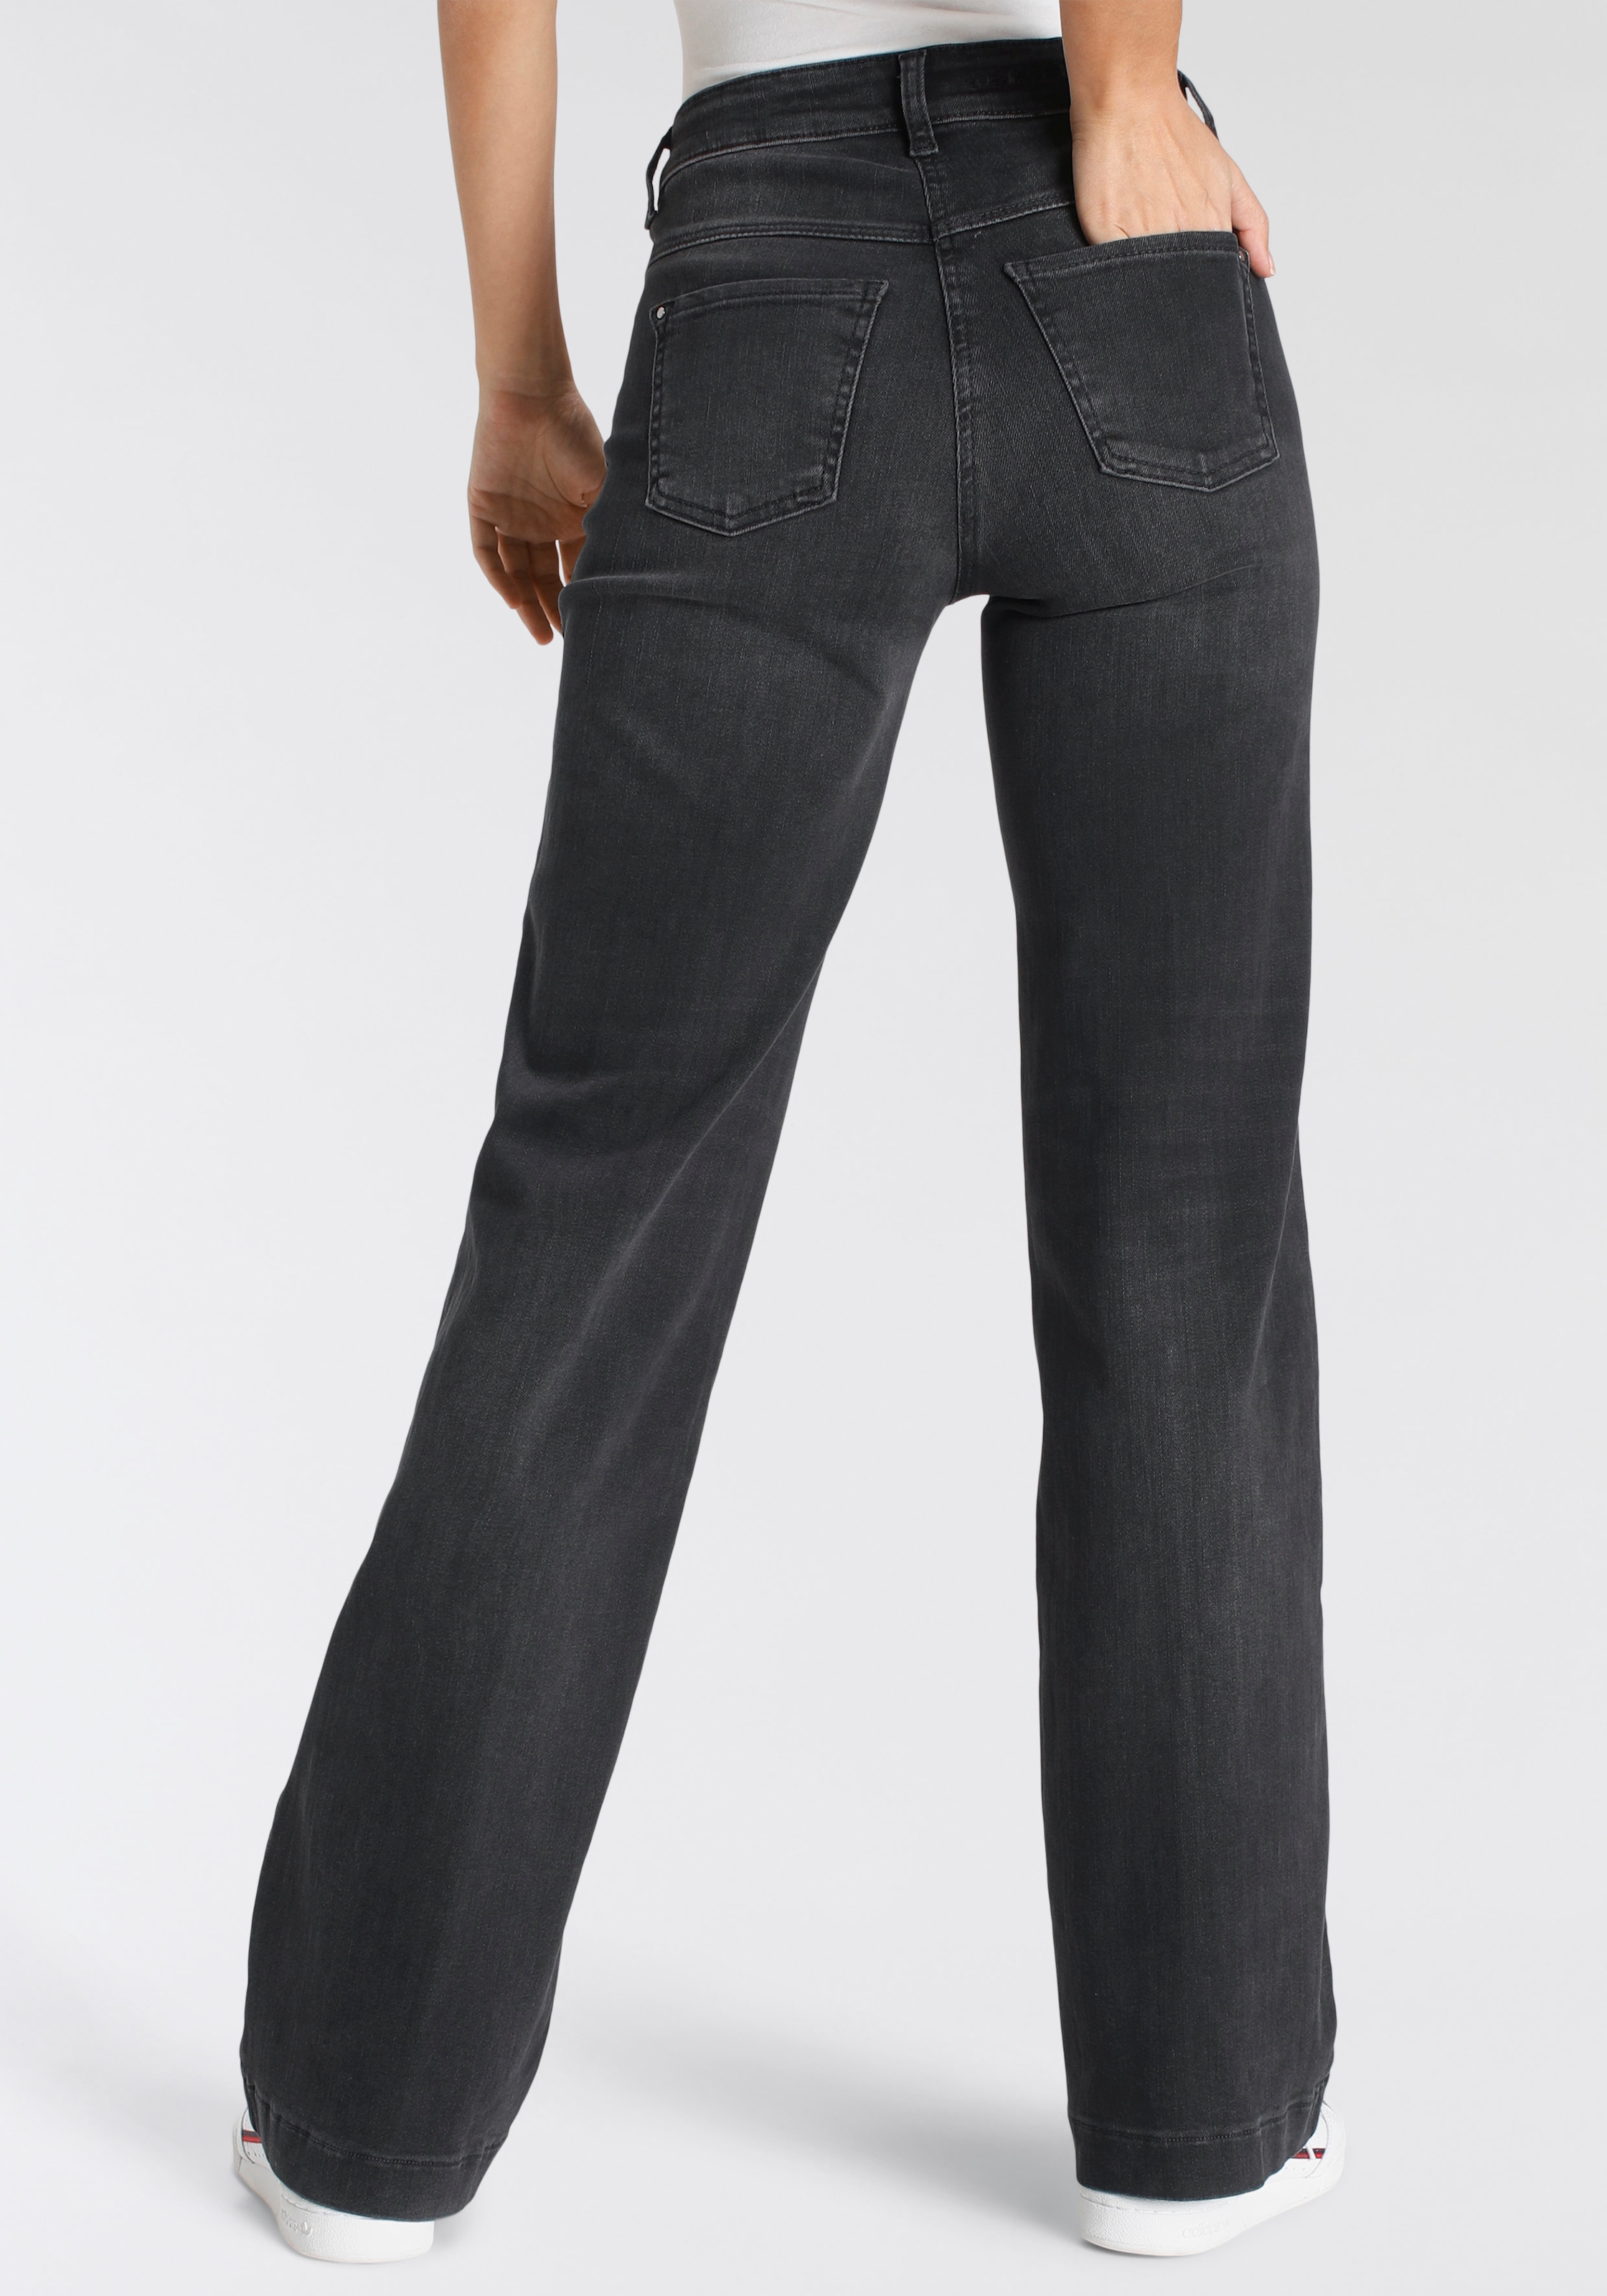 Jeans authentic«, für Shaping-Effekt »Dream | BAUR Wide MAC formendem kaufen Weite mit